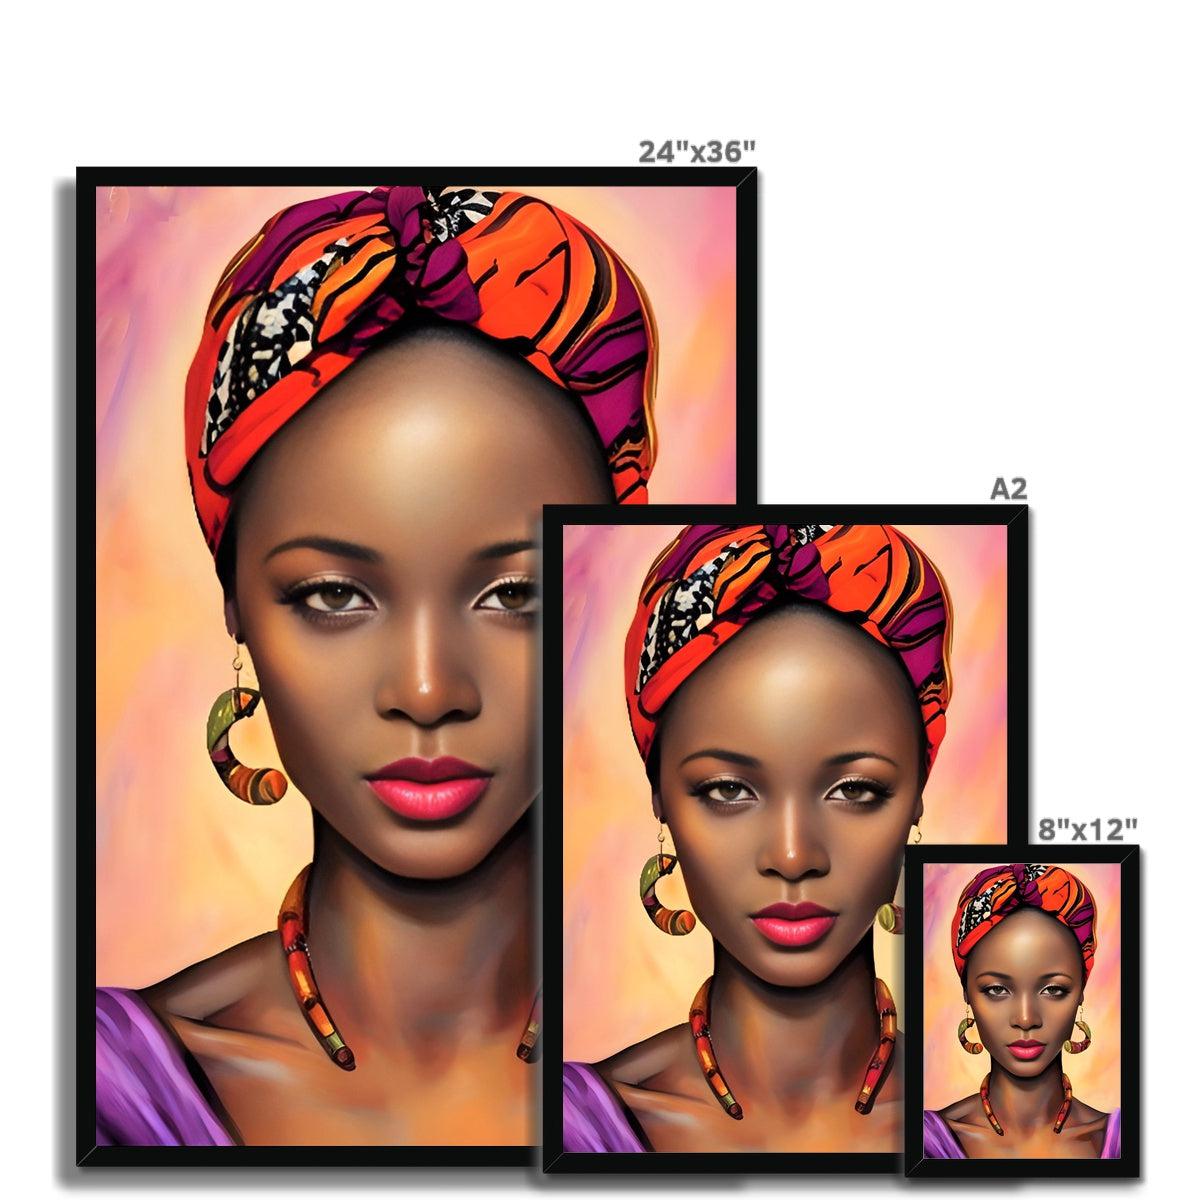 Goddess Africa Framed Print